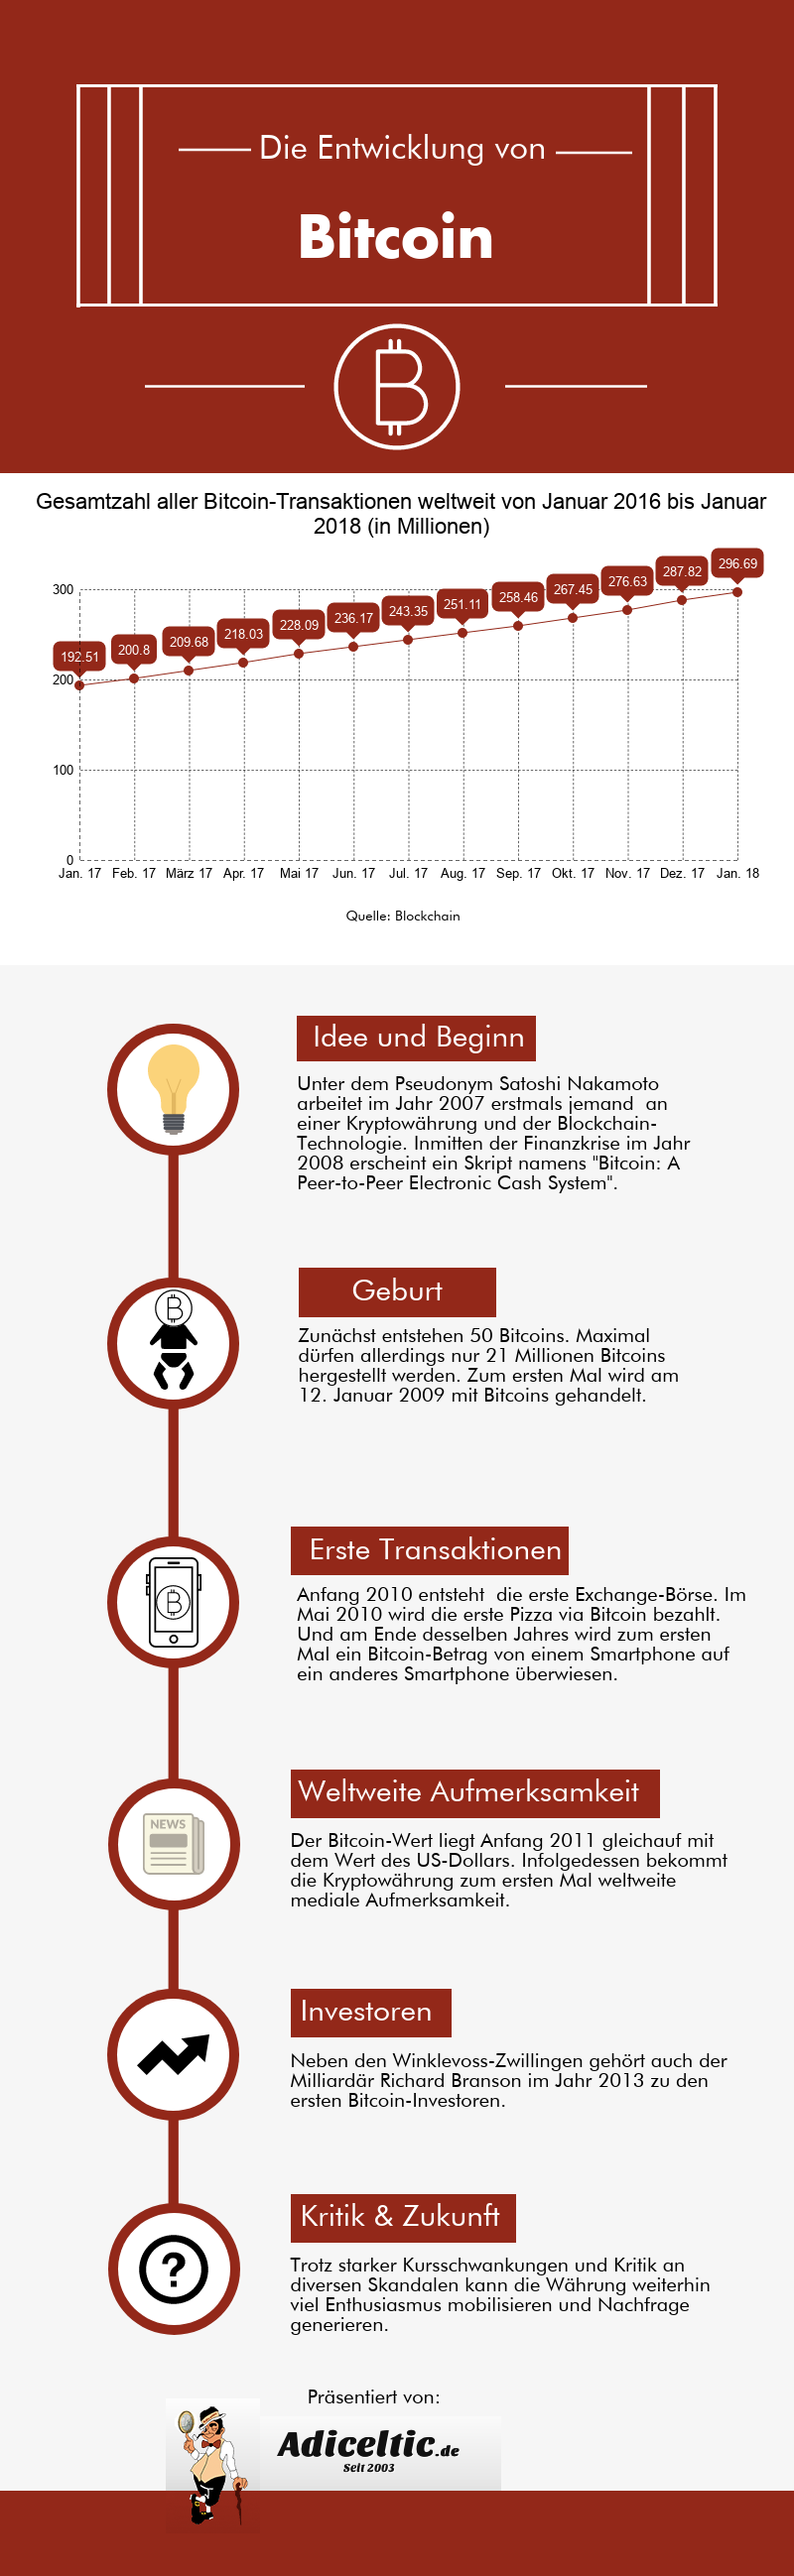 Infografik über die Geschichte der Kryptowährung Bitcoin, ihr Entstehen, die ersten Transaktionen und die ersten Investoren.